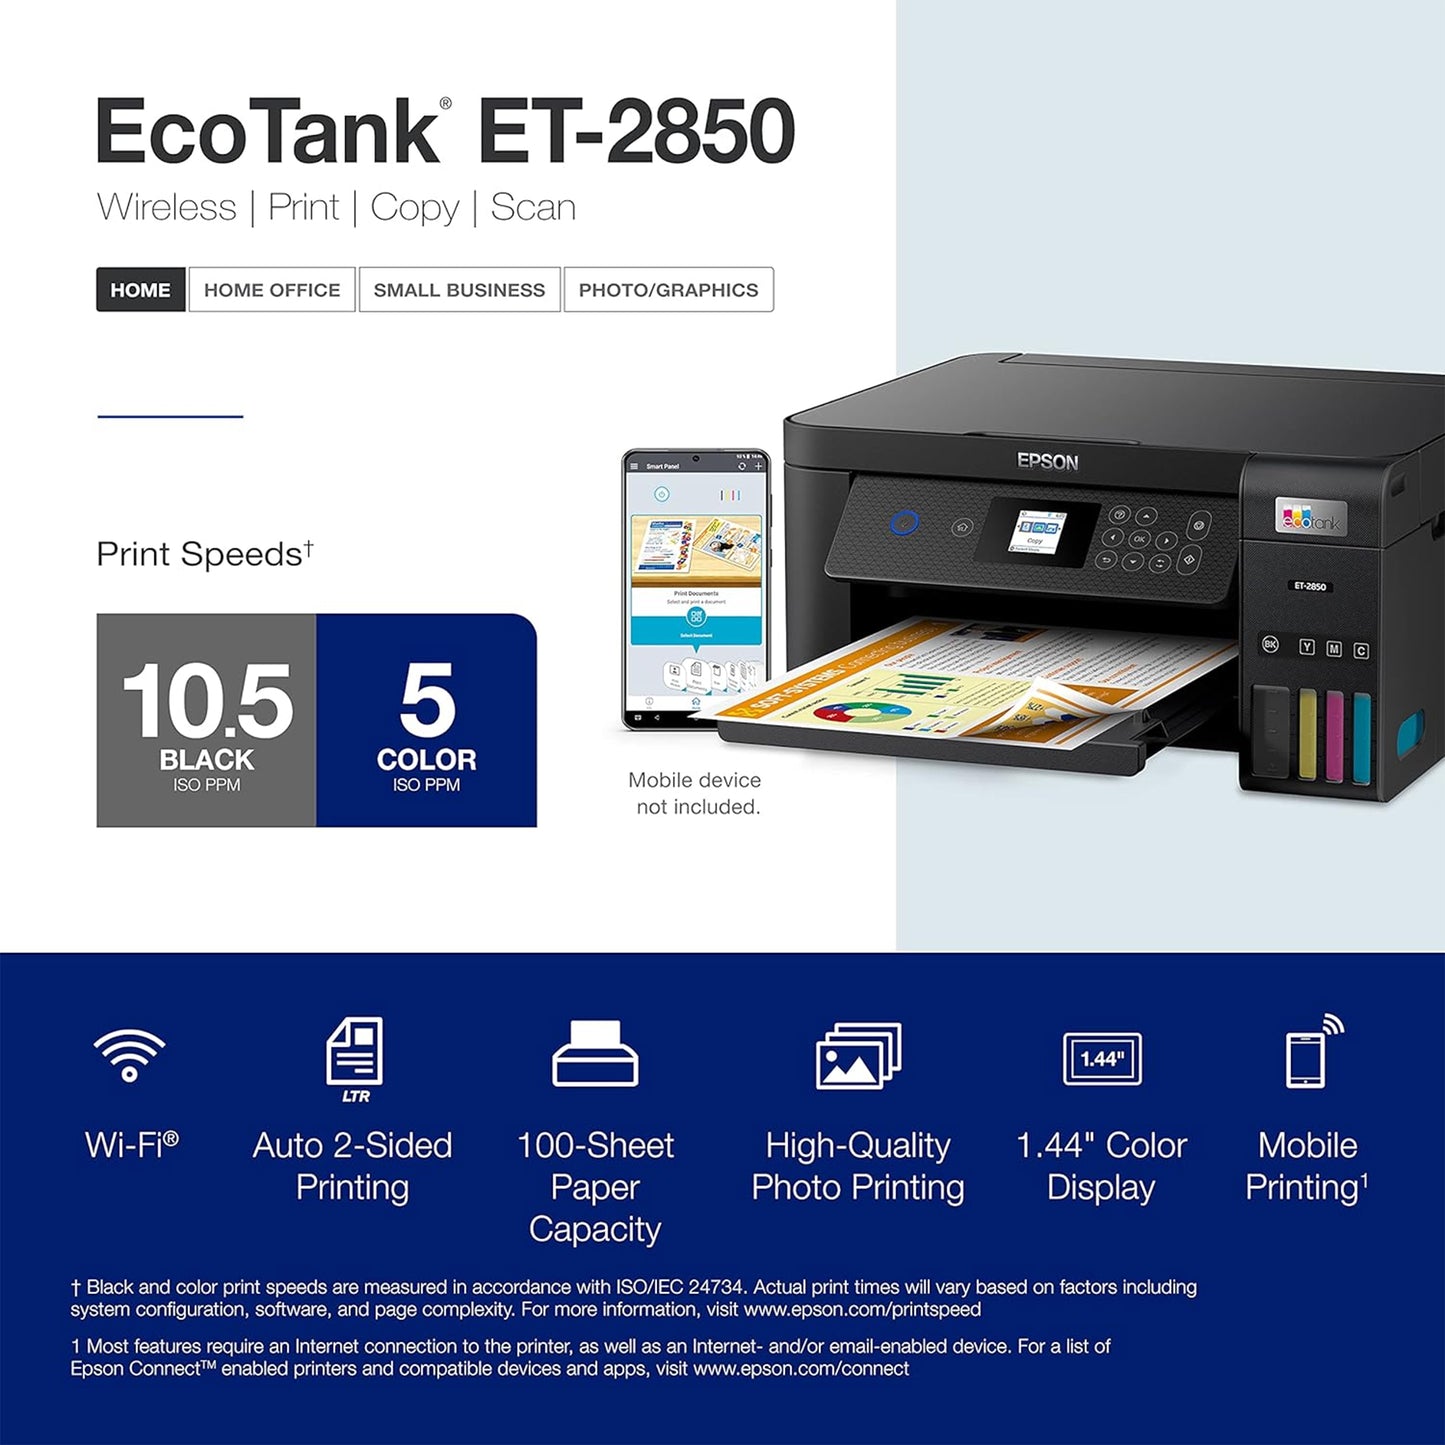 طابعة Epson EcoTank ET-2850 اللاسلكية الملونة الكل في واحد Supertank خالية من خرطوشة مع المسح الضوئي والنسخ والطباعة التلقائية على الوجهين - أسود، متوسط